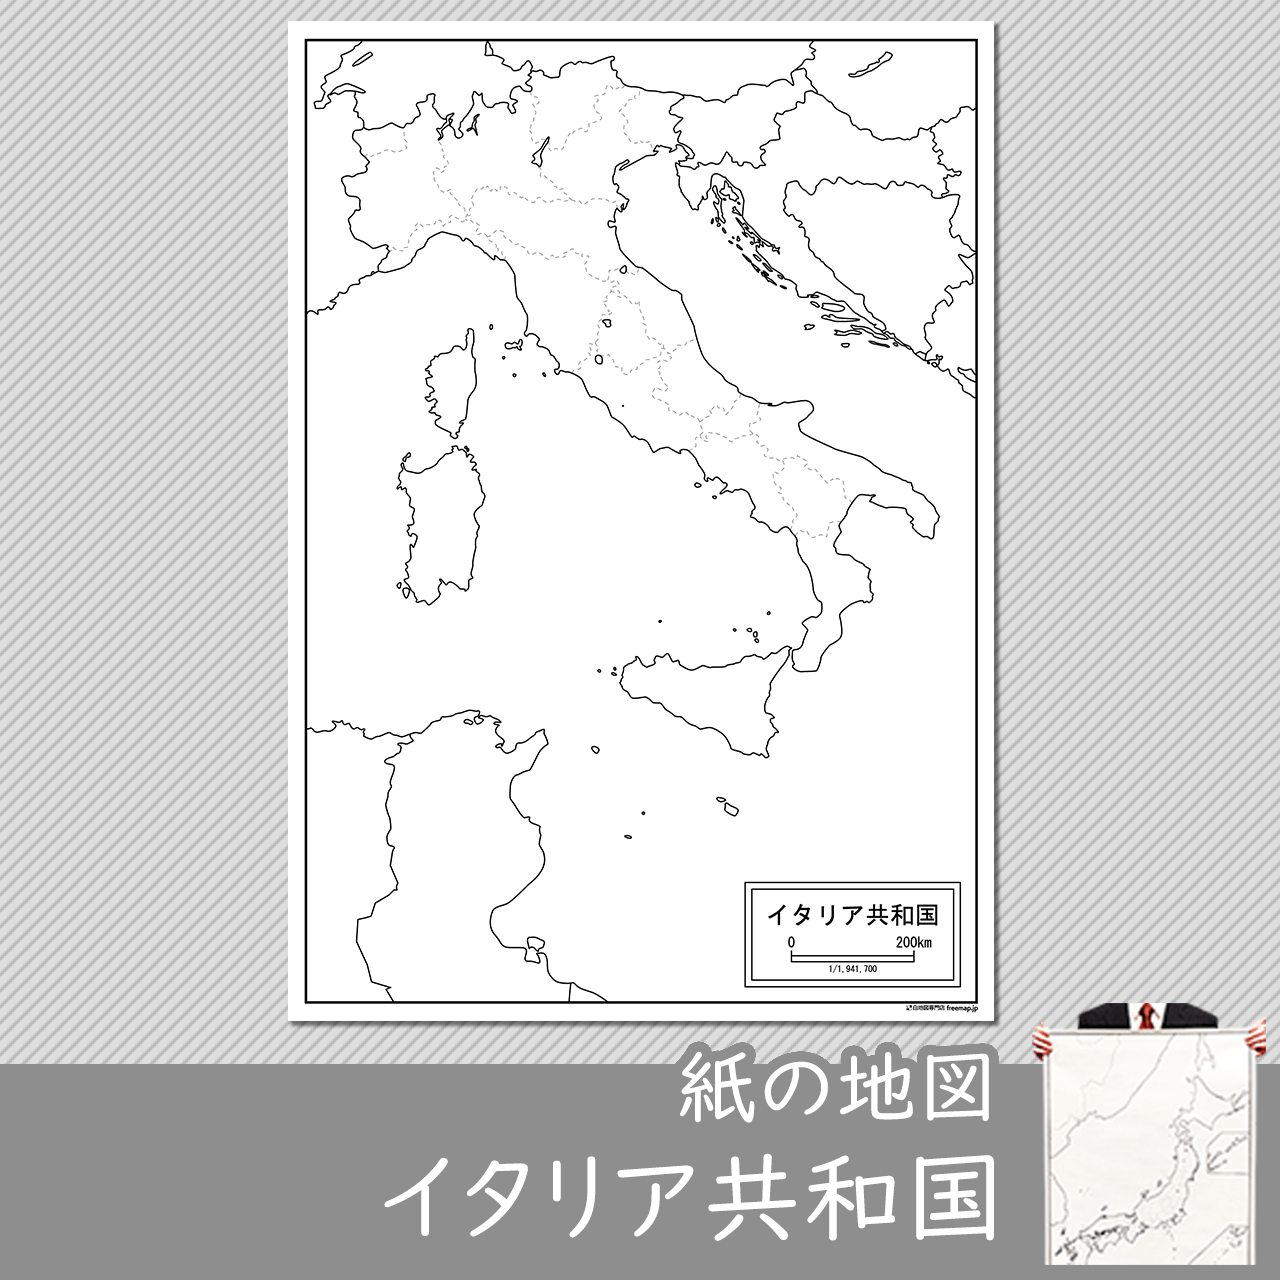 イタリア共和国の紙の白地図のサムネイル